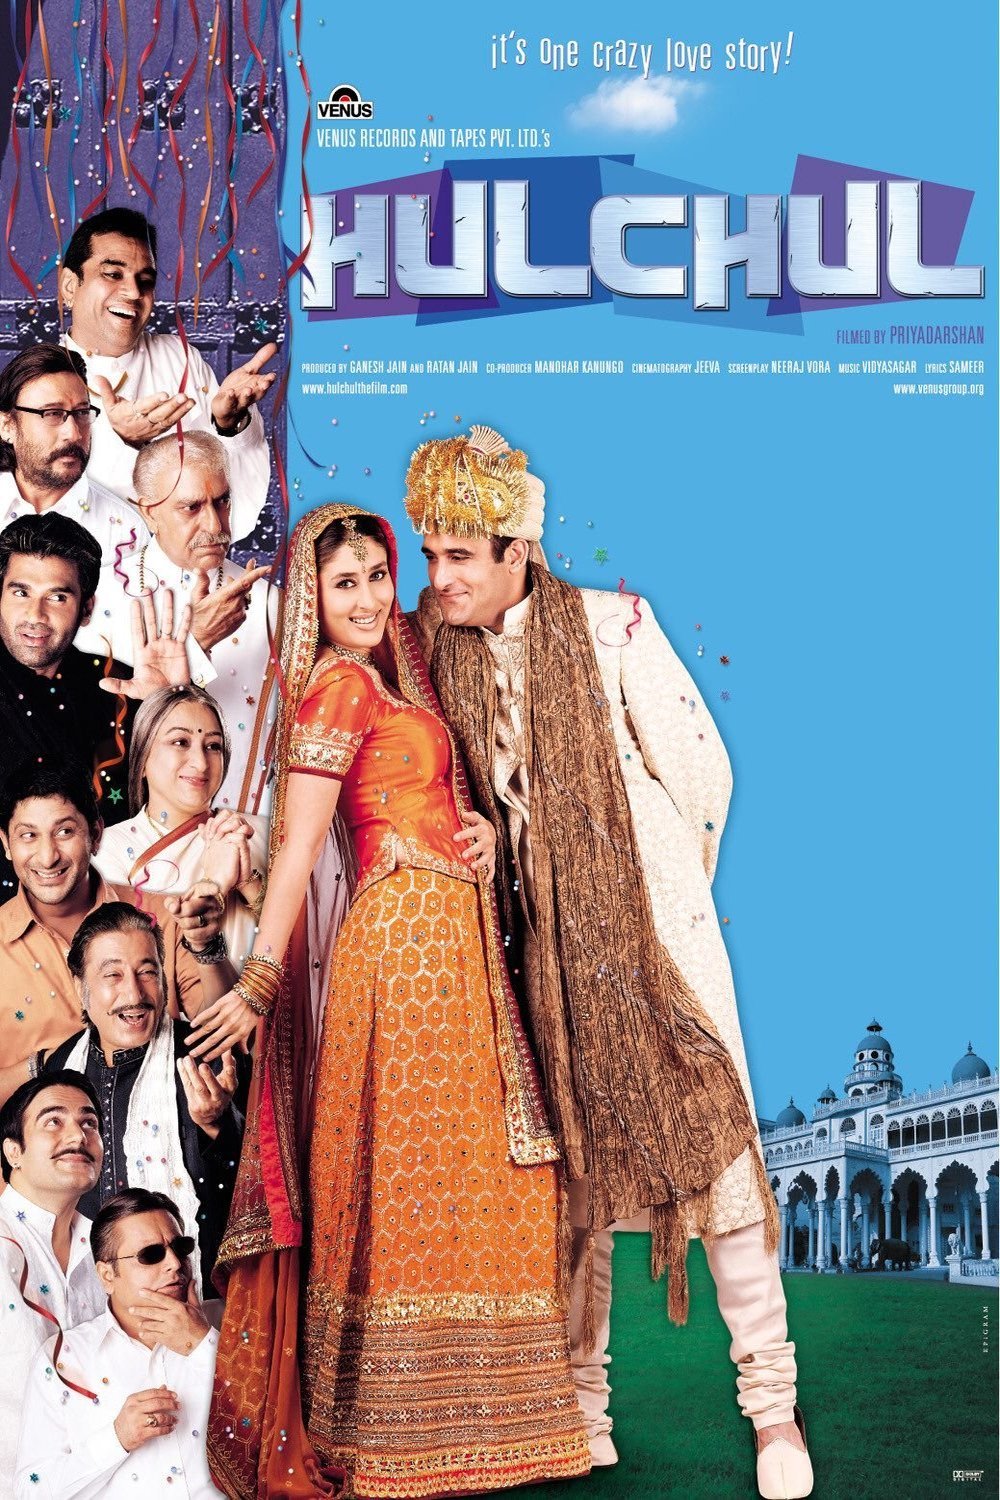 Hindi poster of the movie Hulchul